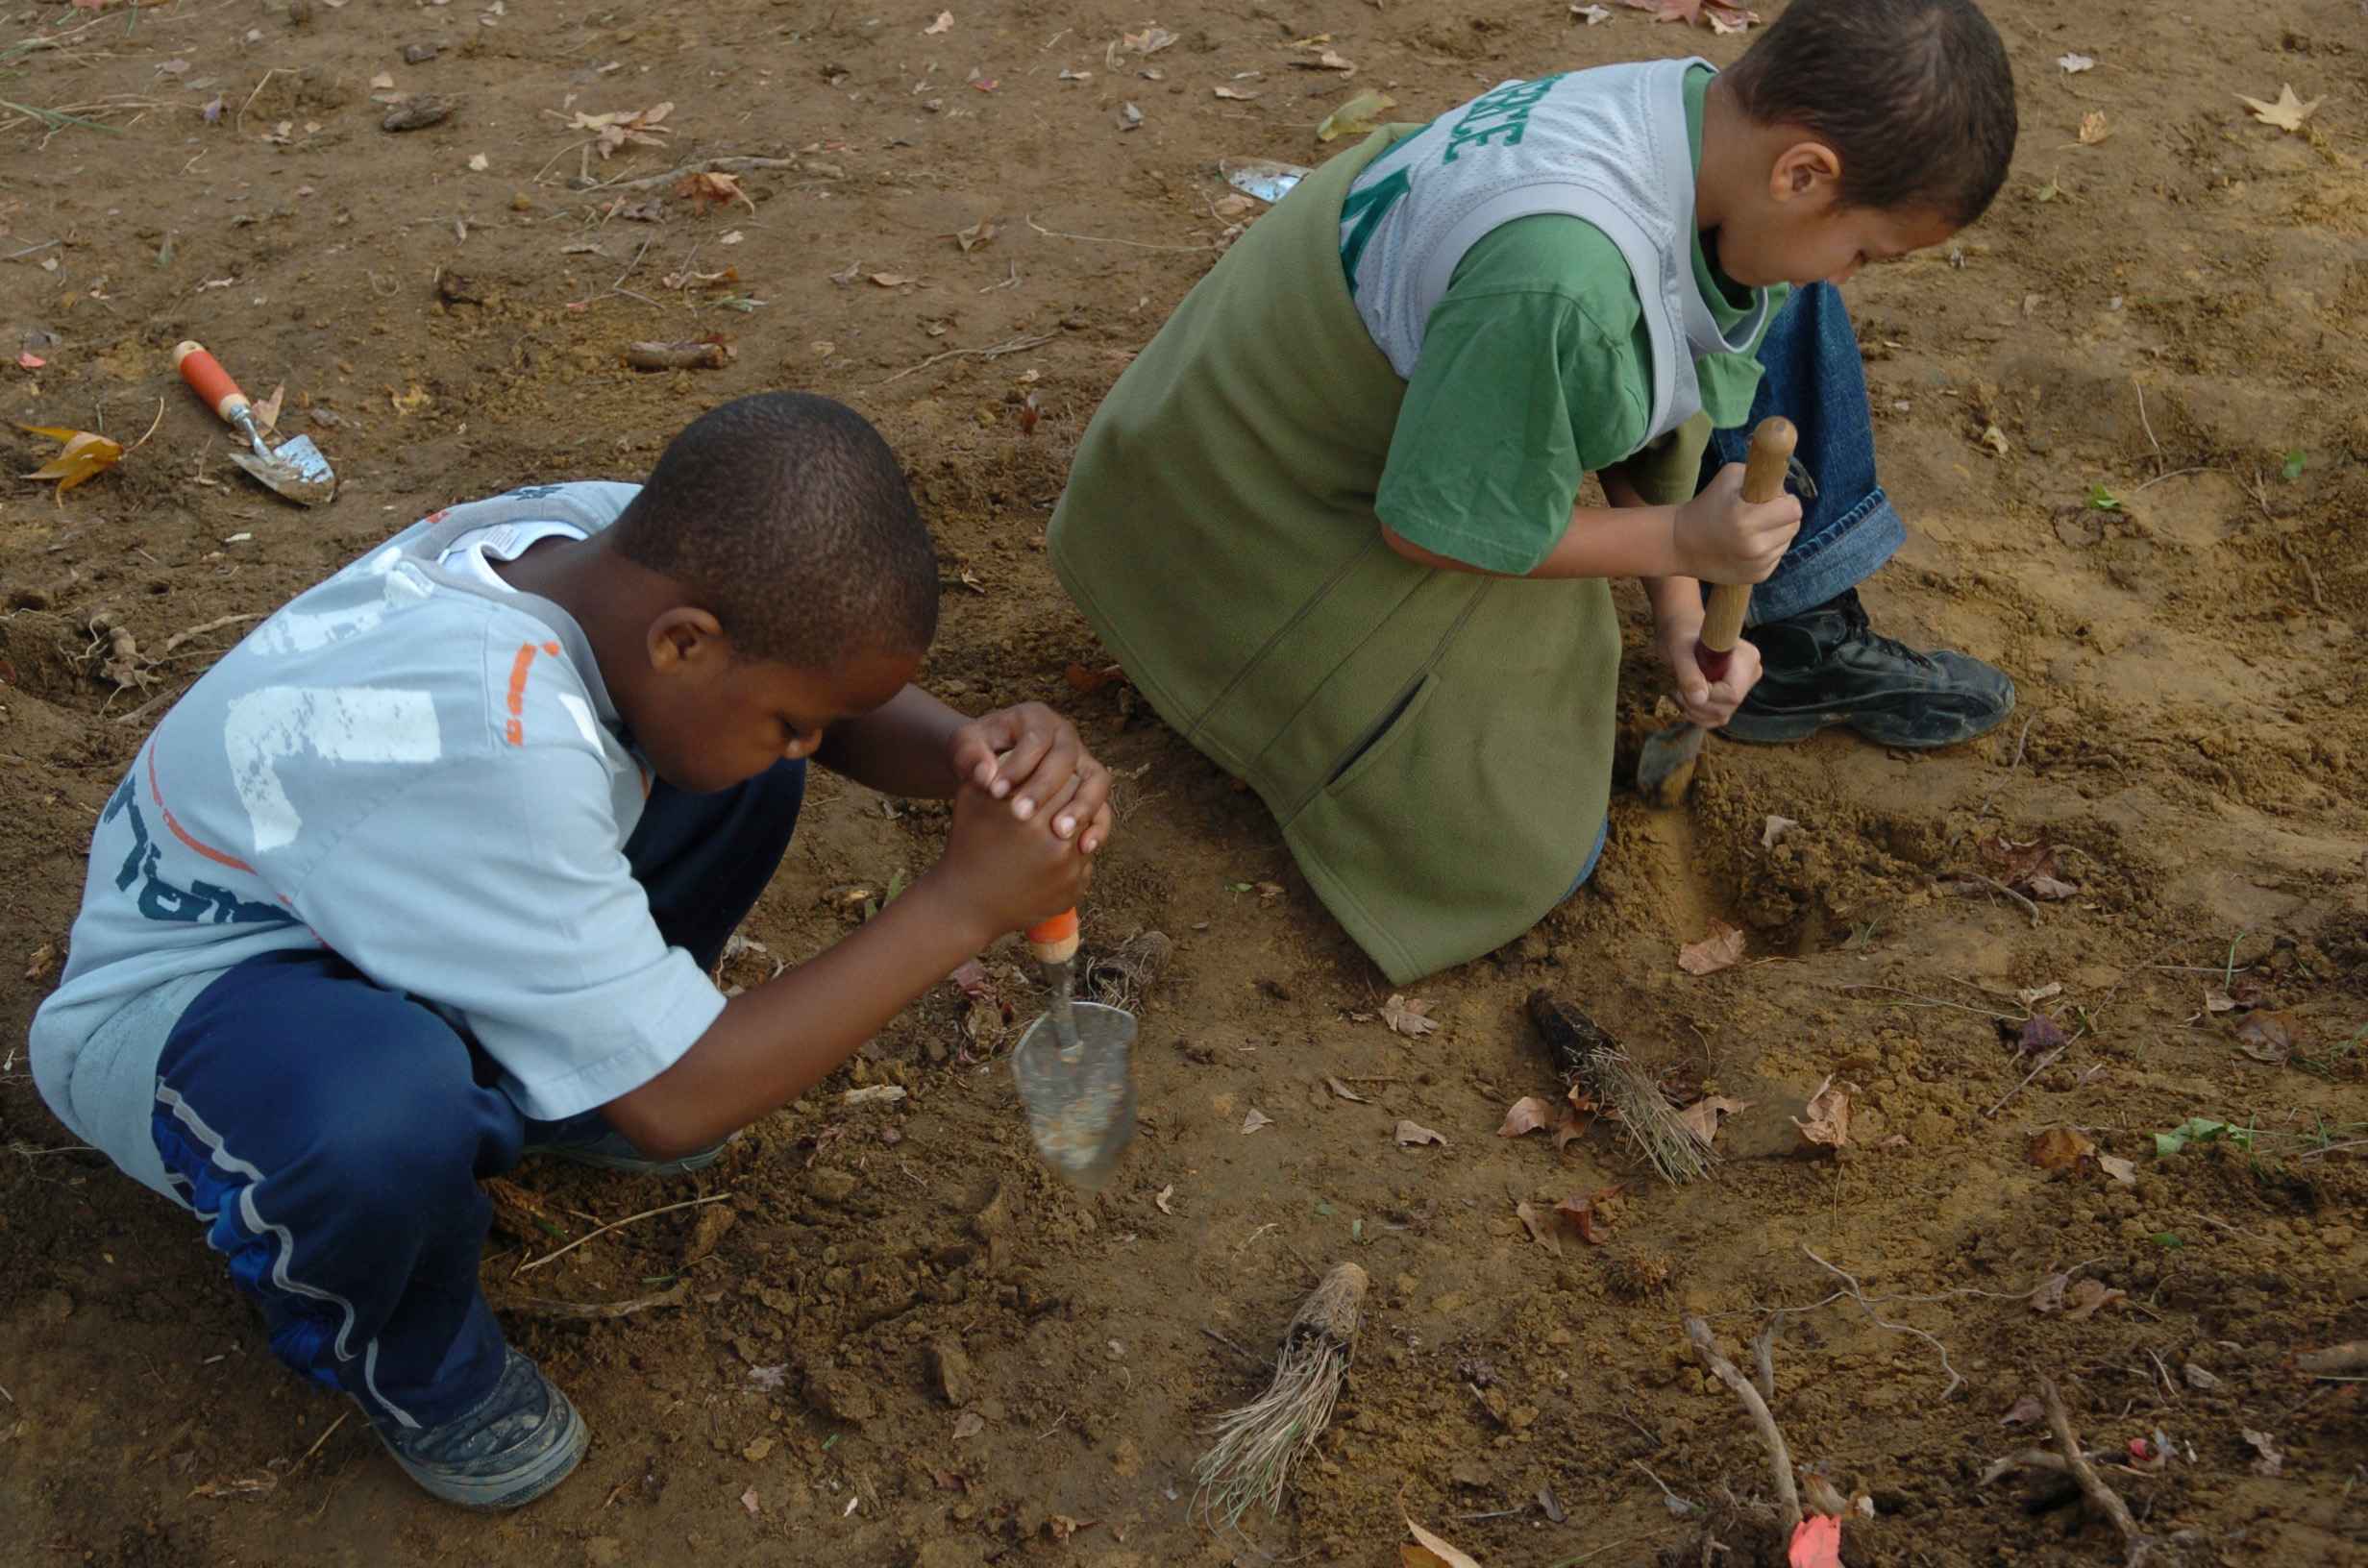 Digging holes. Негр сажает цветы. Негритянки сажают траву. Картинка ребенок роет песок. Planting hole digging.